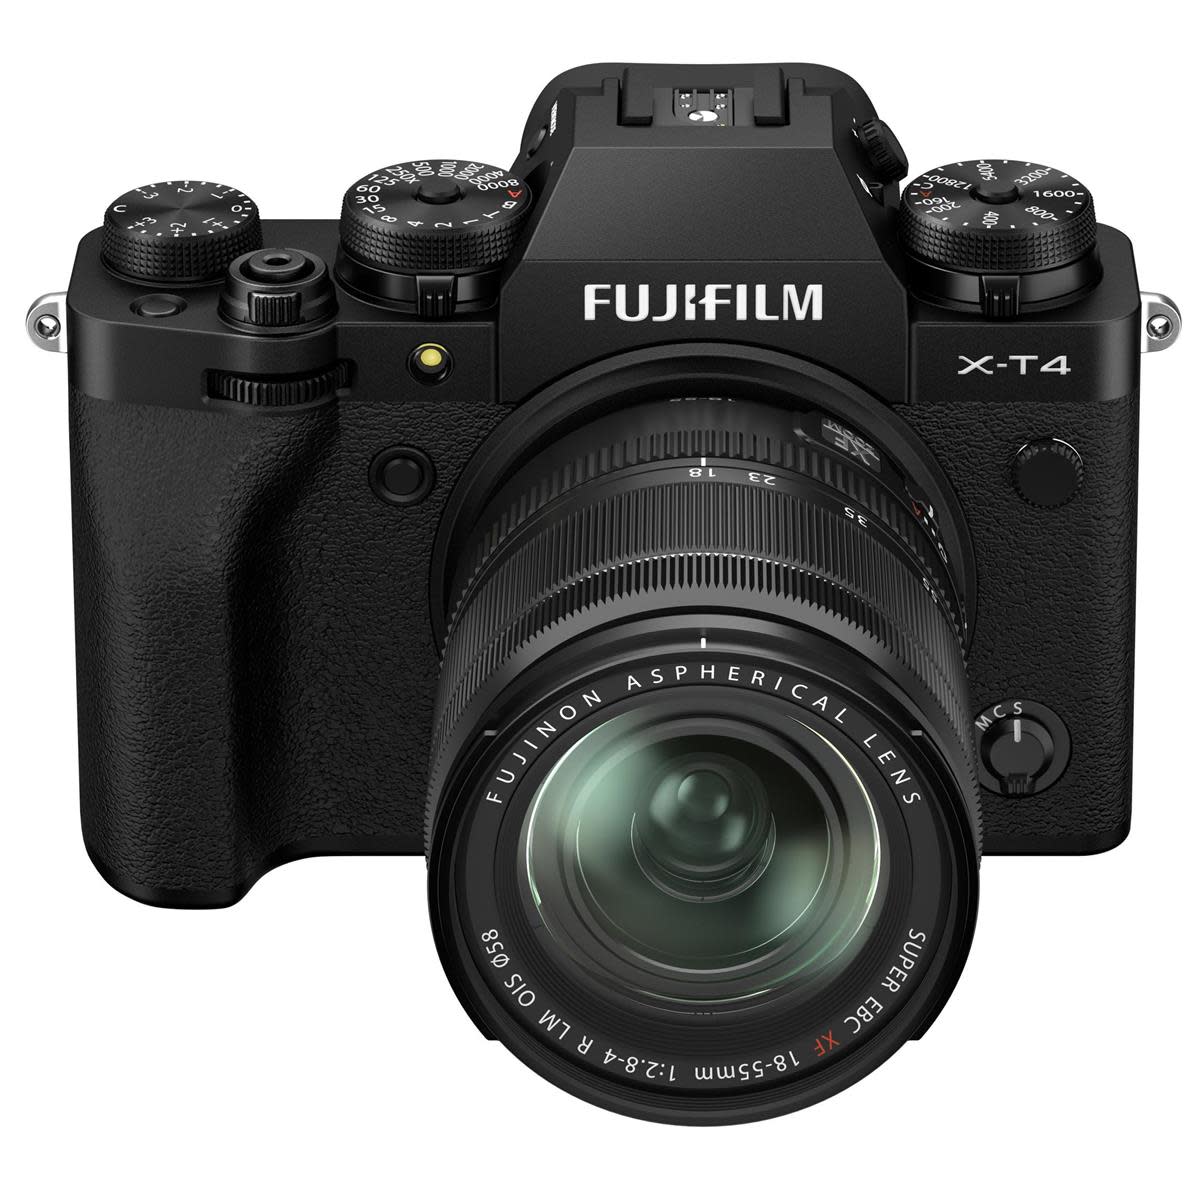 Fujifilm X-T4 kit 18-55mm (Mới 100%) Bảo hành chính hãng trên toàn quốc